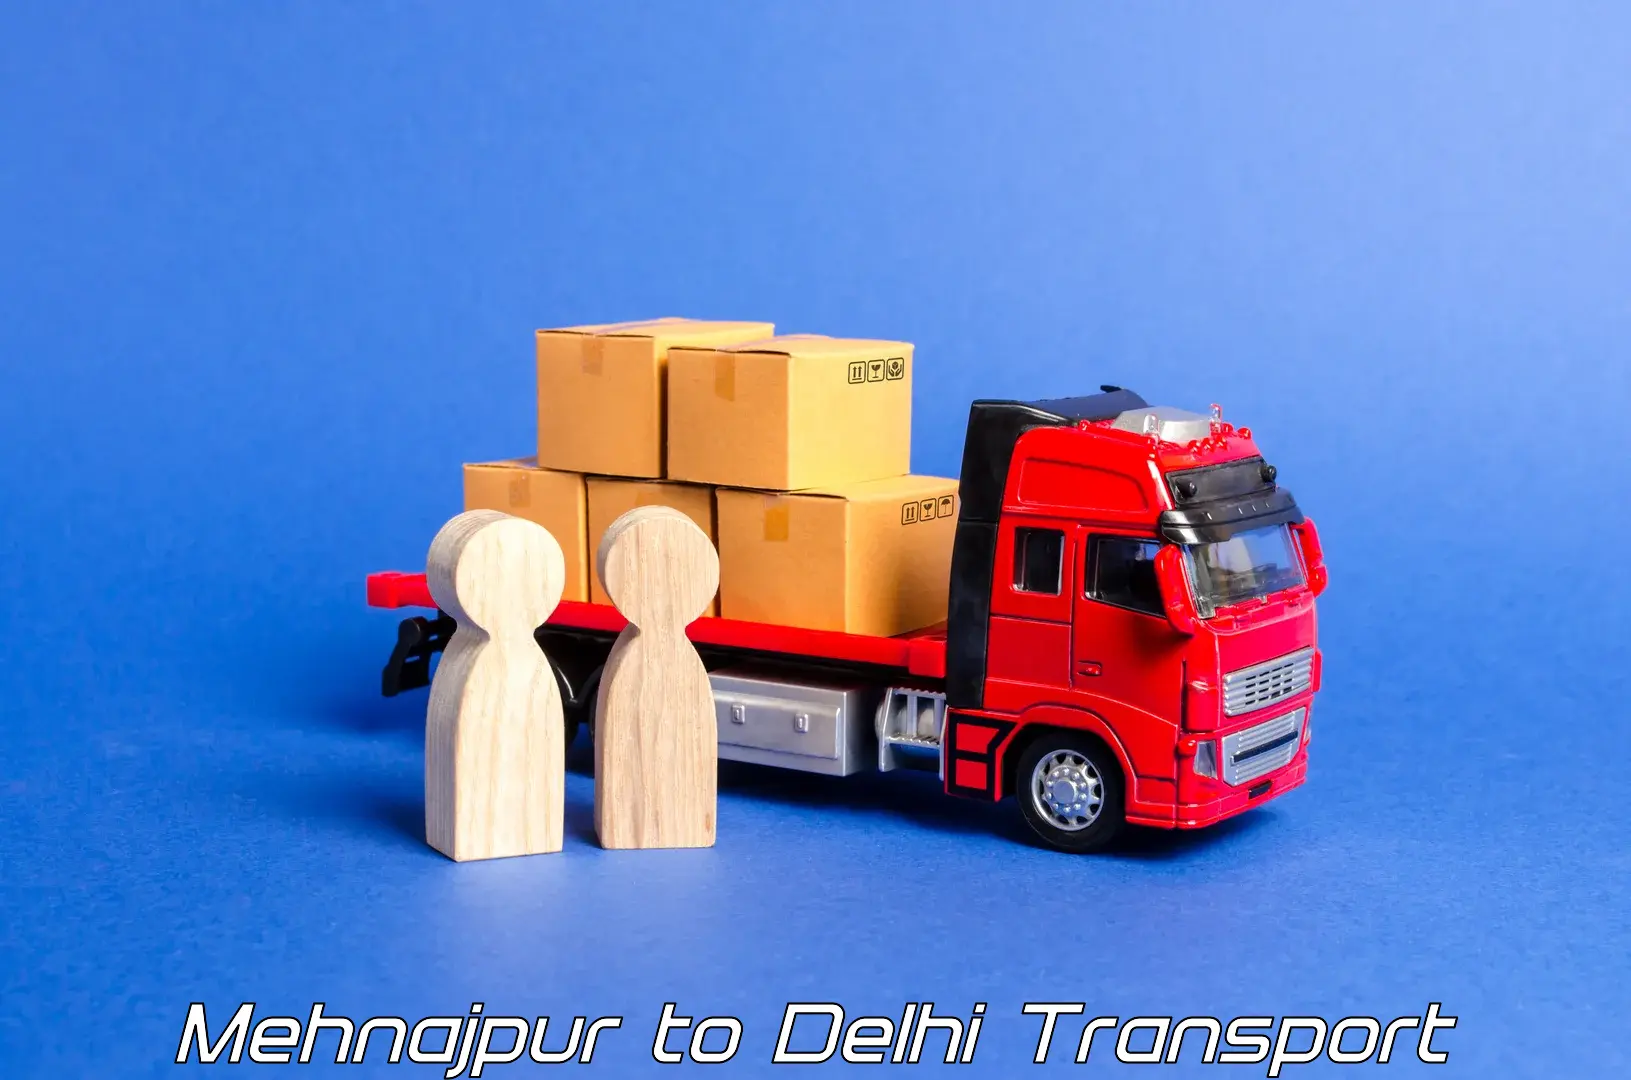 Two wheeler parcel service Mehnajpur to Jamia Millia Islamia New Delhi